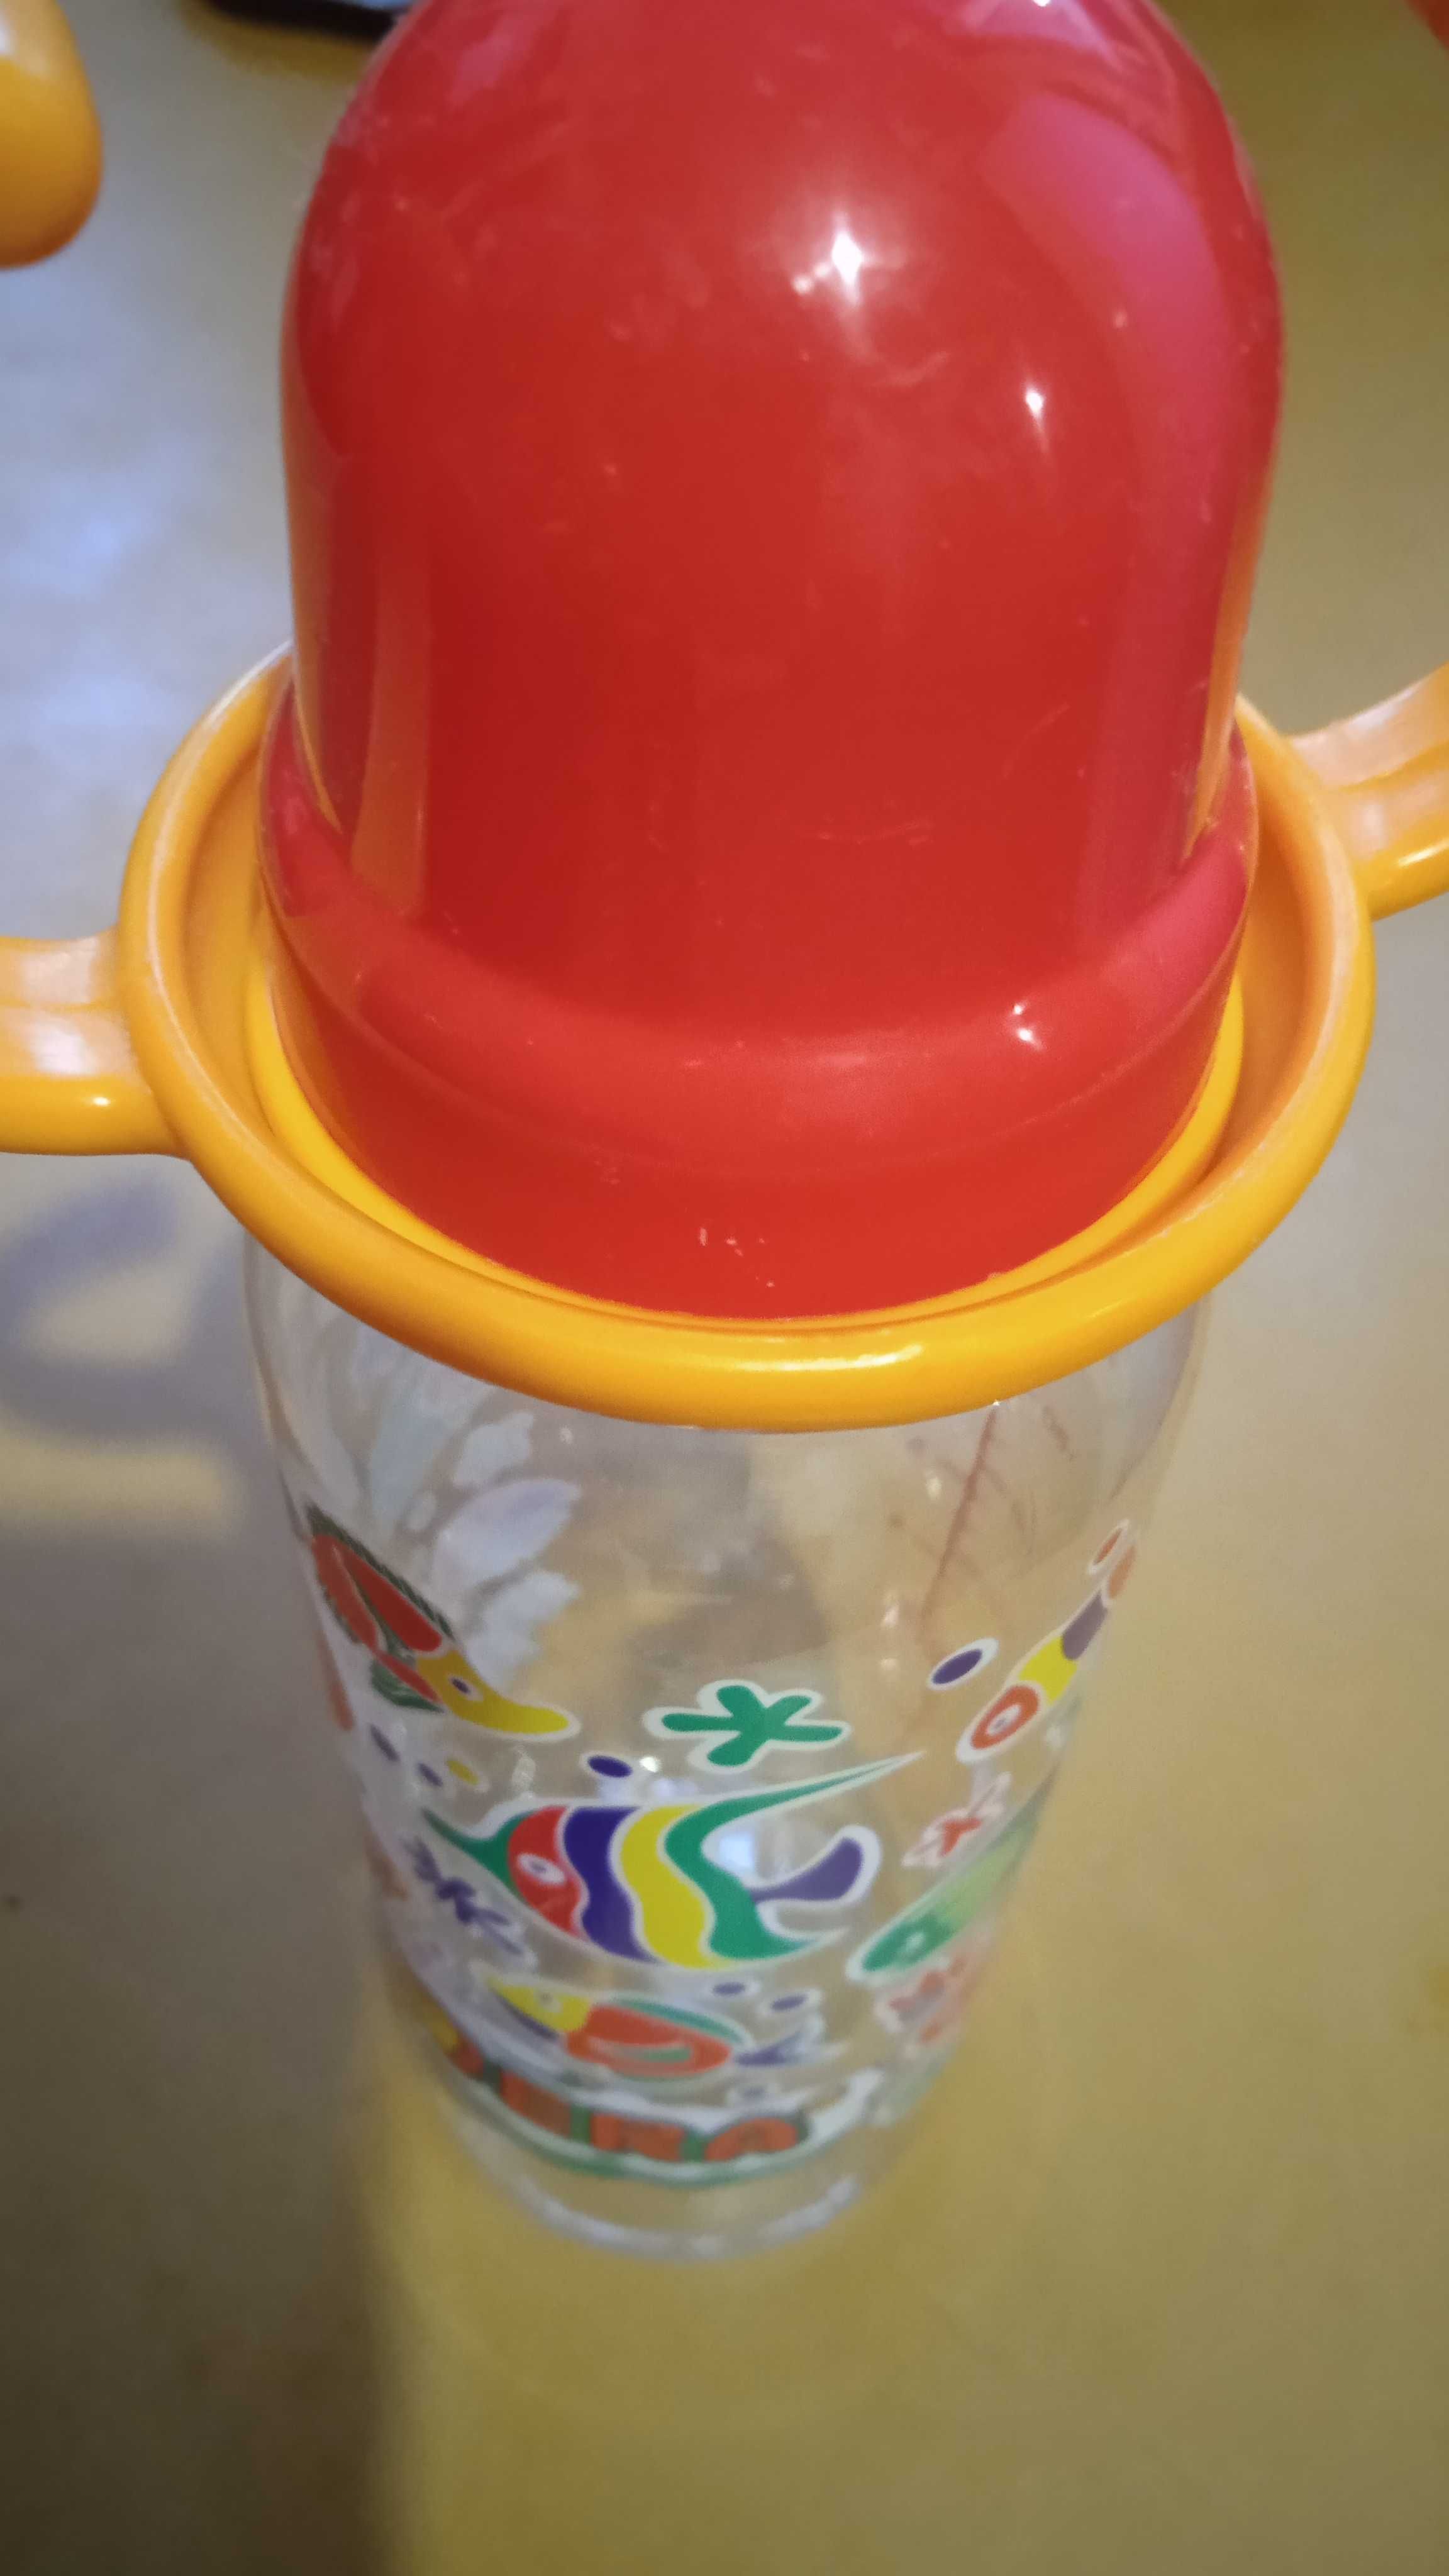 Бутылочка для детского питания. Не использовалась.